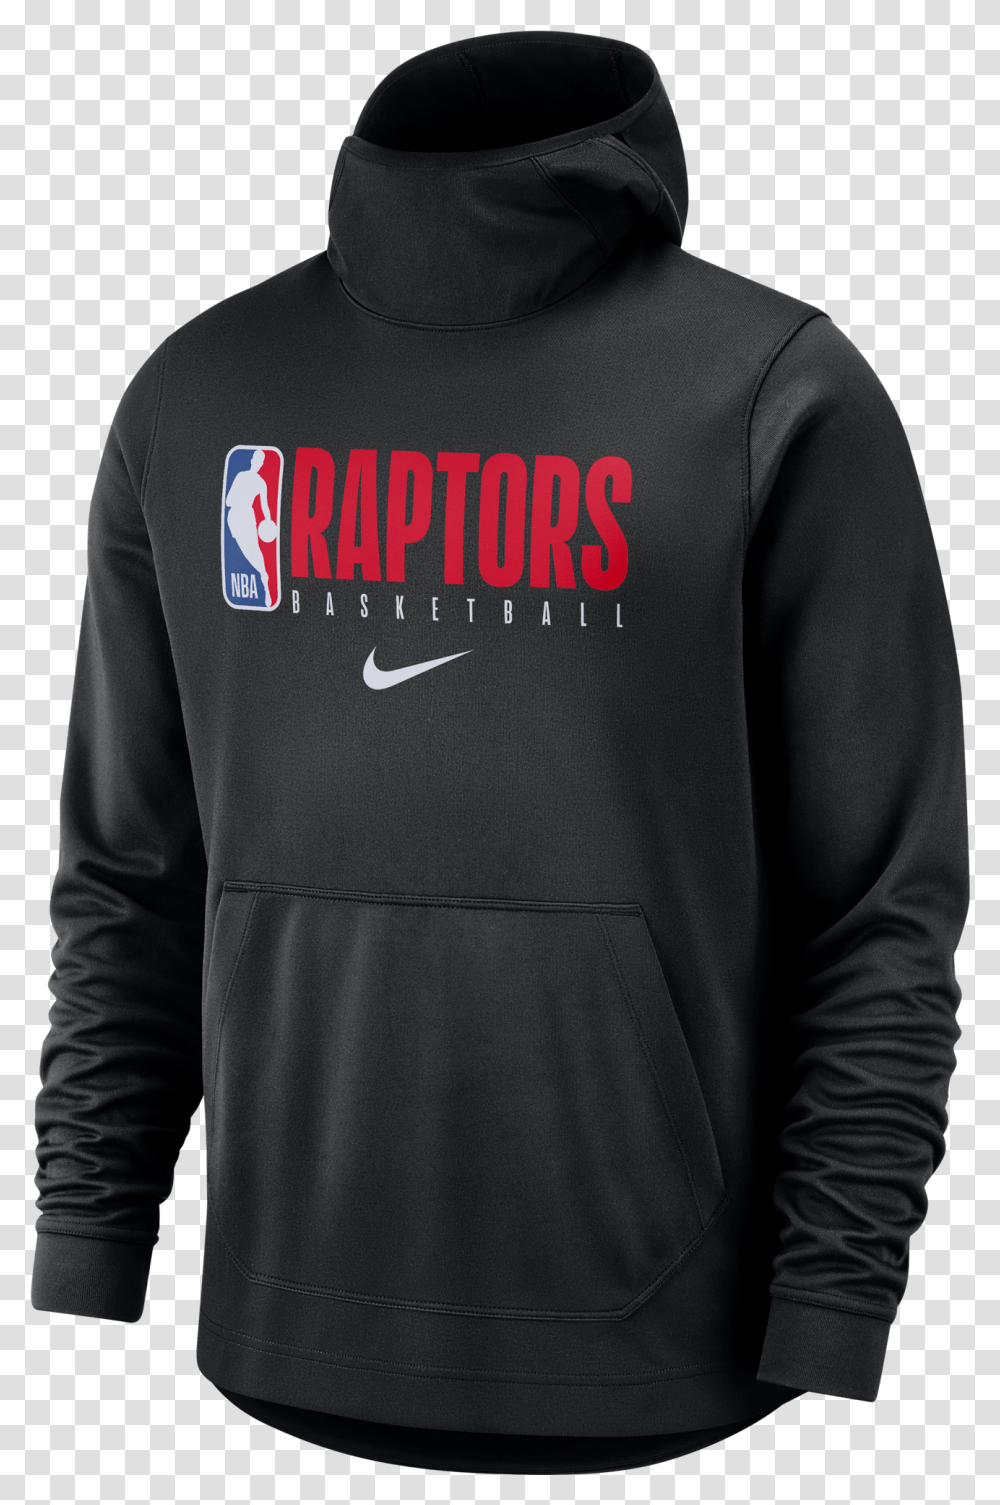 Nike Nba Toronto Raptors Spotlight Hoodie Nike Brooklyn Nets Hoodie, Apparel, Sweatshirt, Sweater Transparent Png